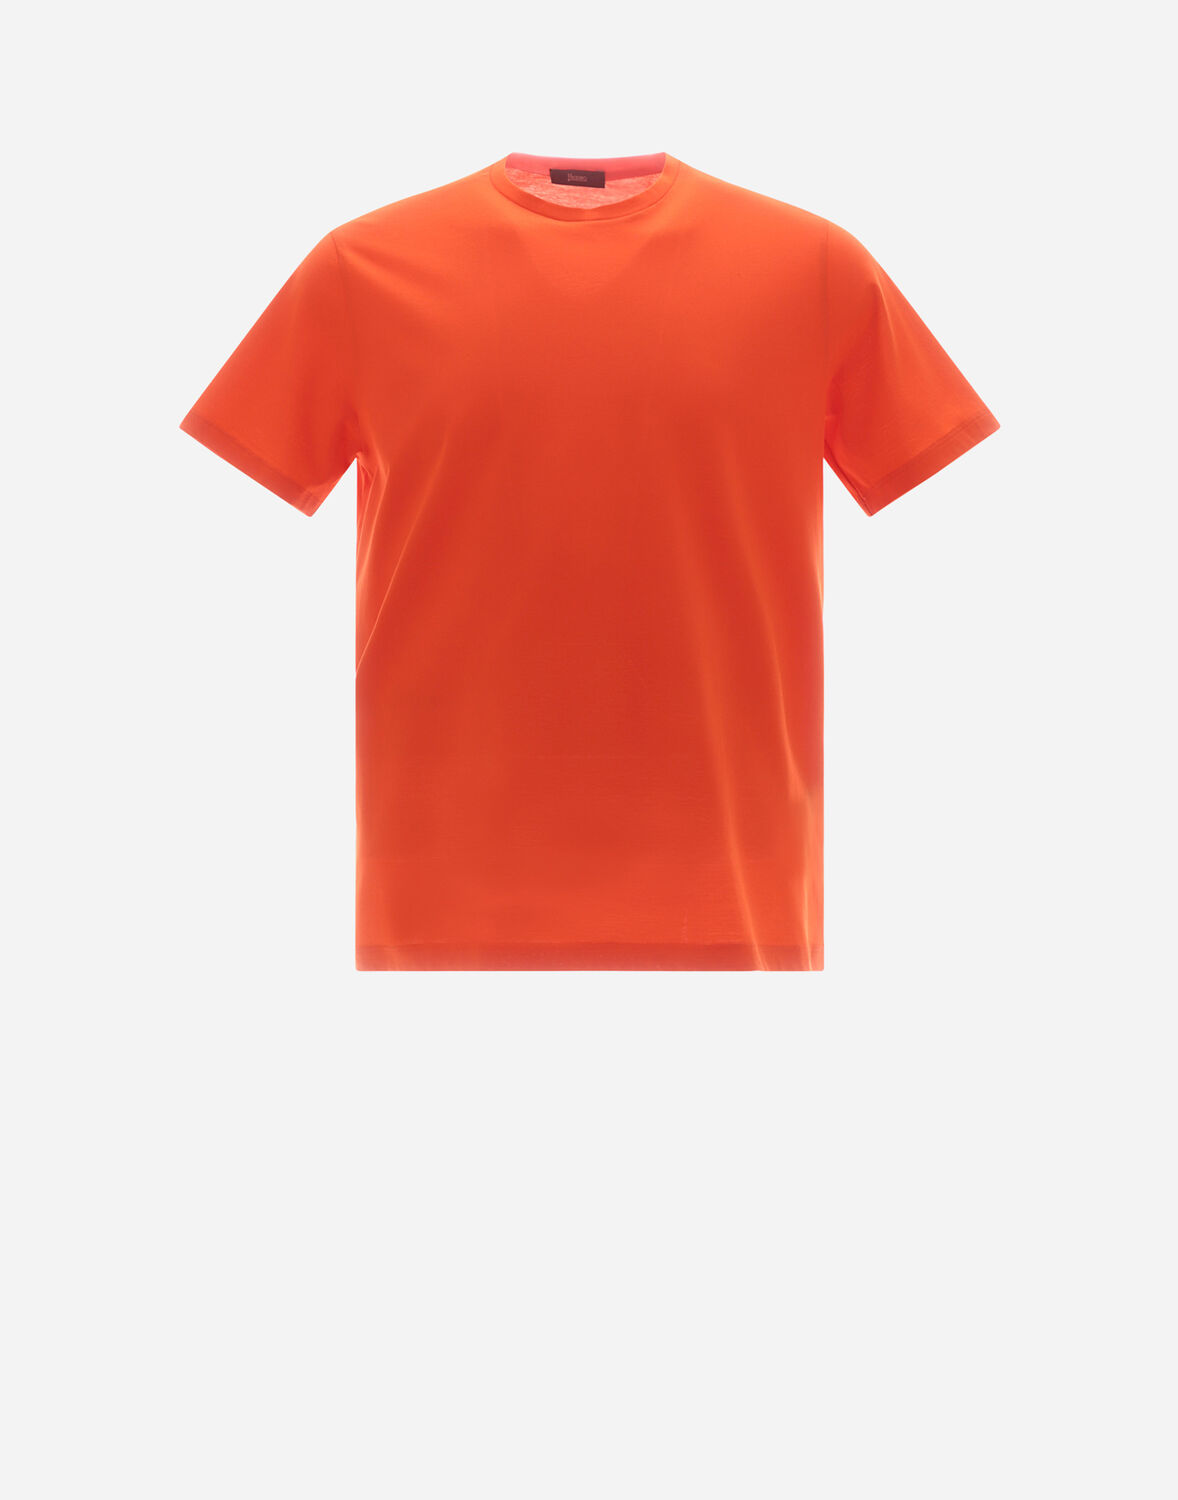 Herno T-shirt In Crepe Jersey - Male Men Knitwear Orange 44